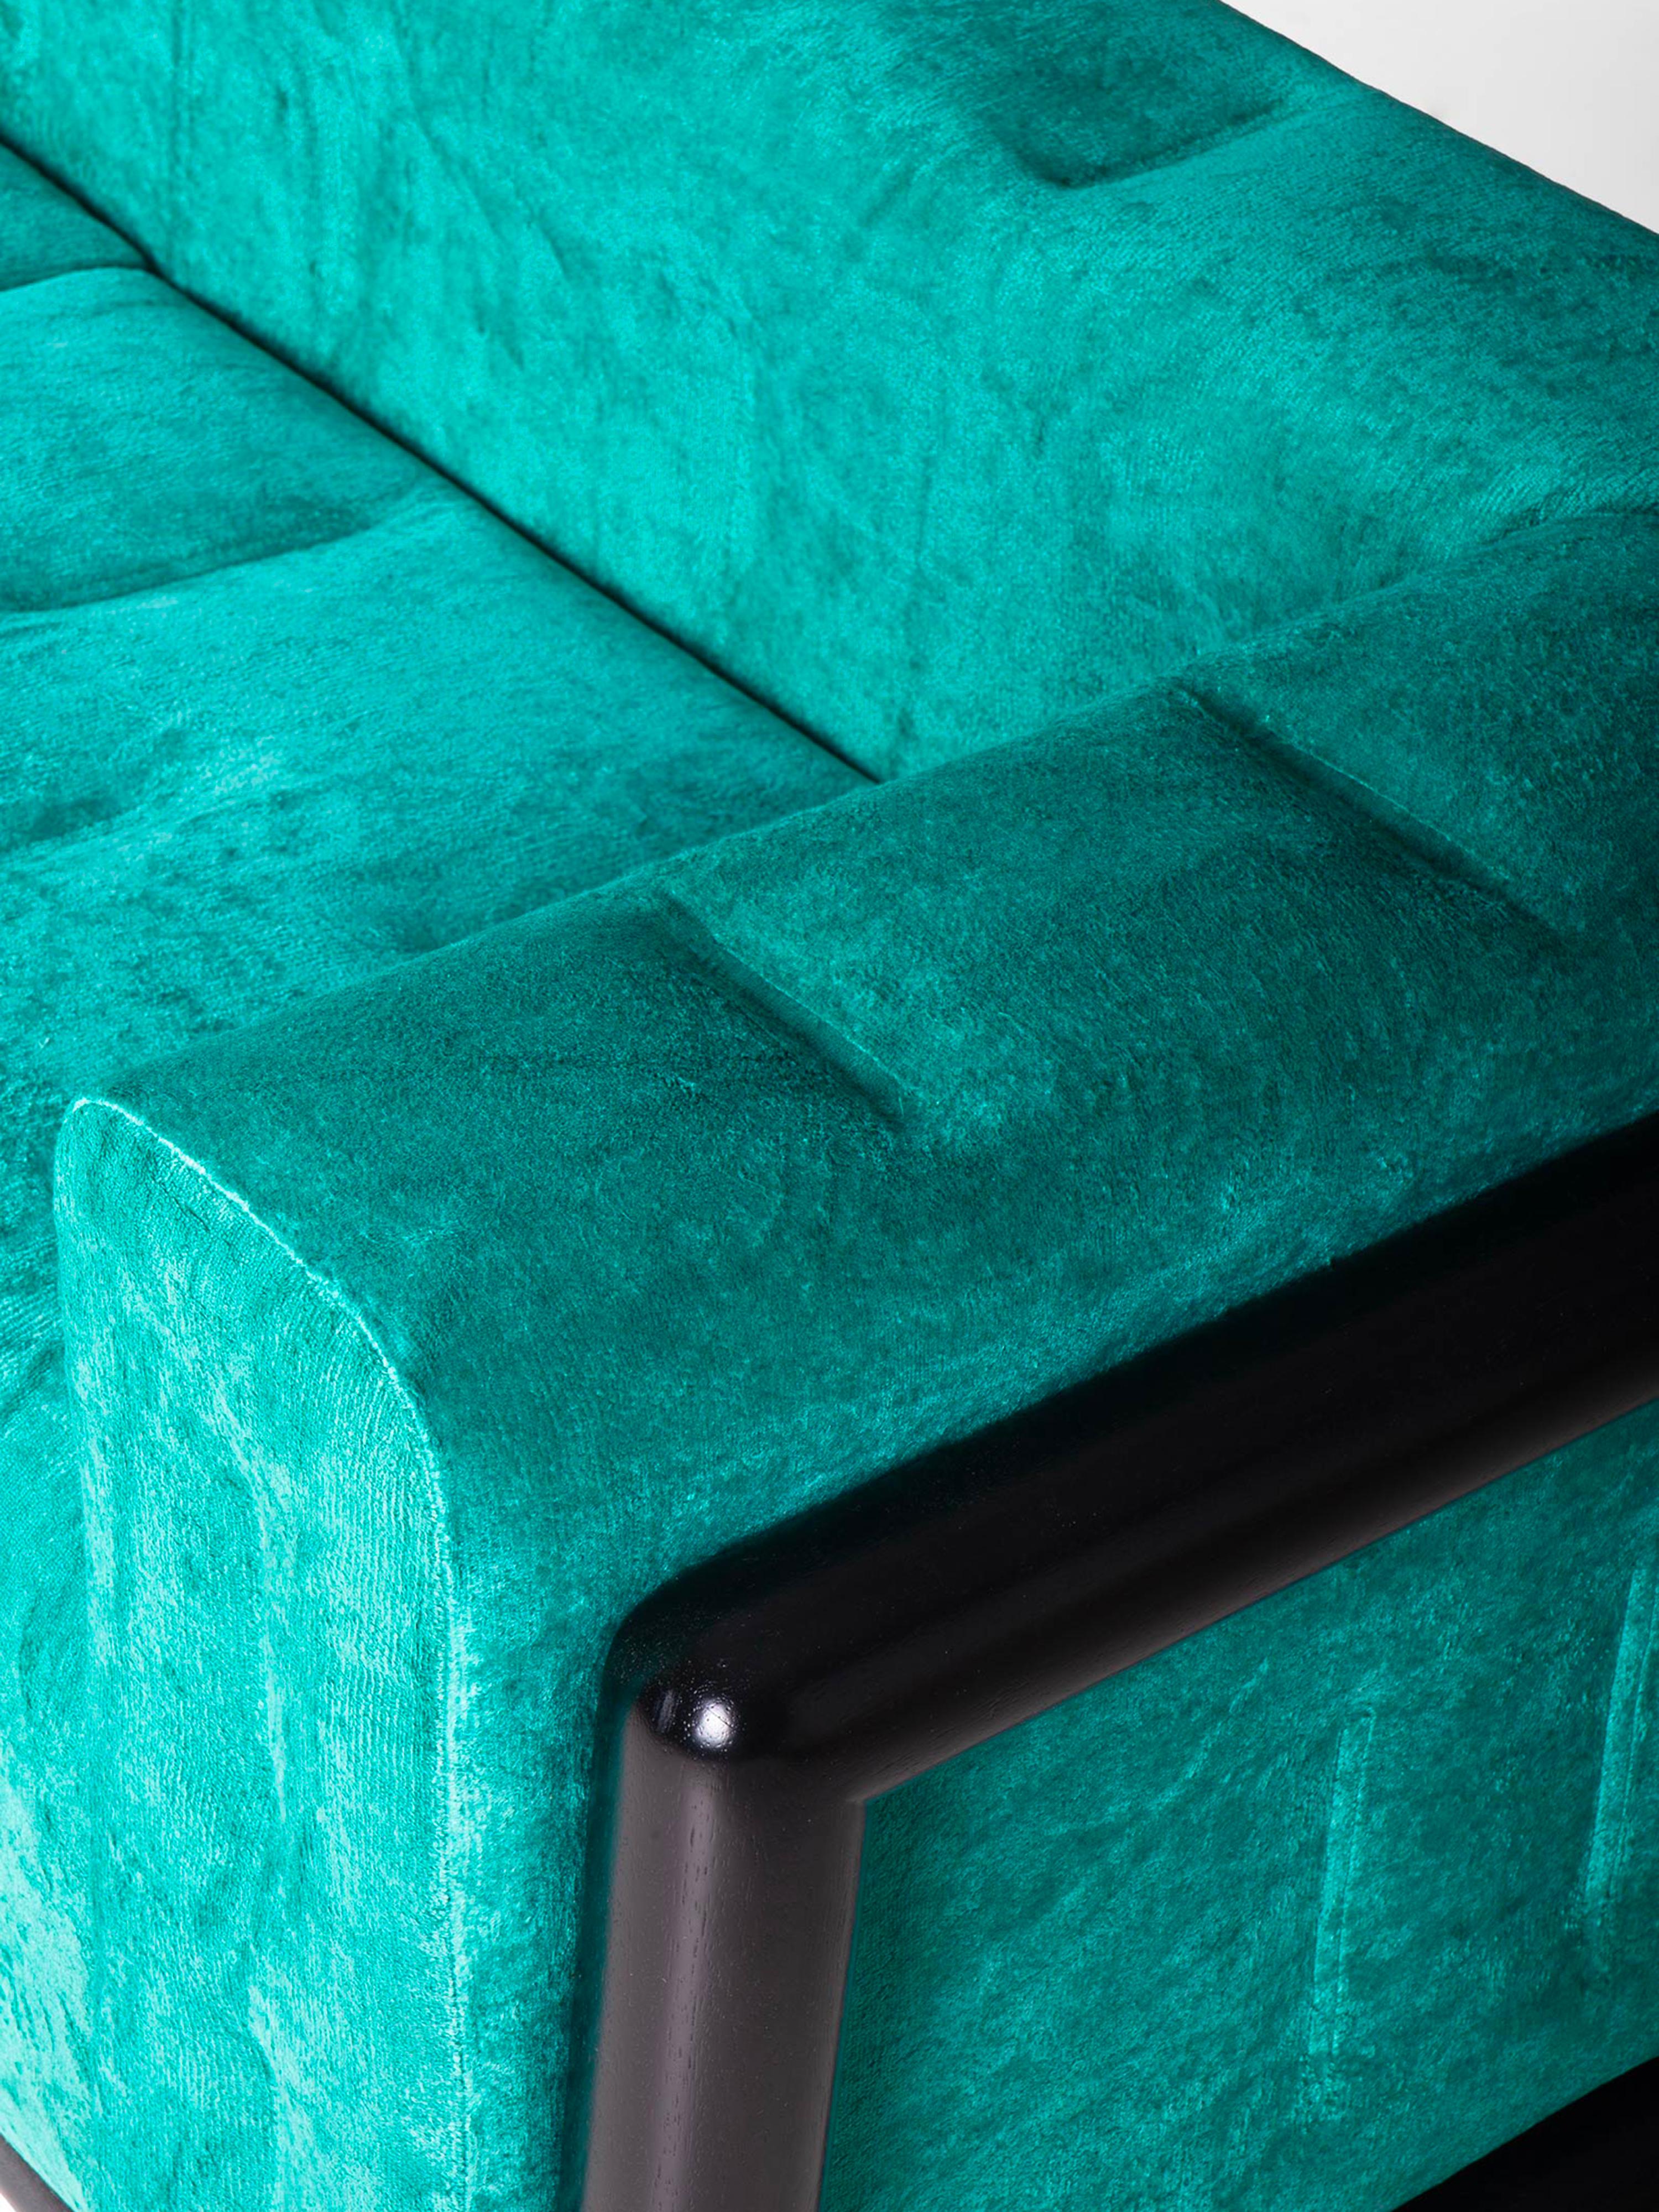 Cornaro 300 Sofa by Carlo Scarpa in Green Chenille Velvet In Excellent Condition For Sale In Ozzano Dell'emilia, IT